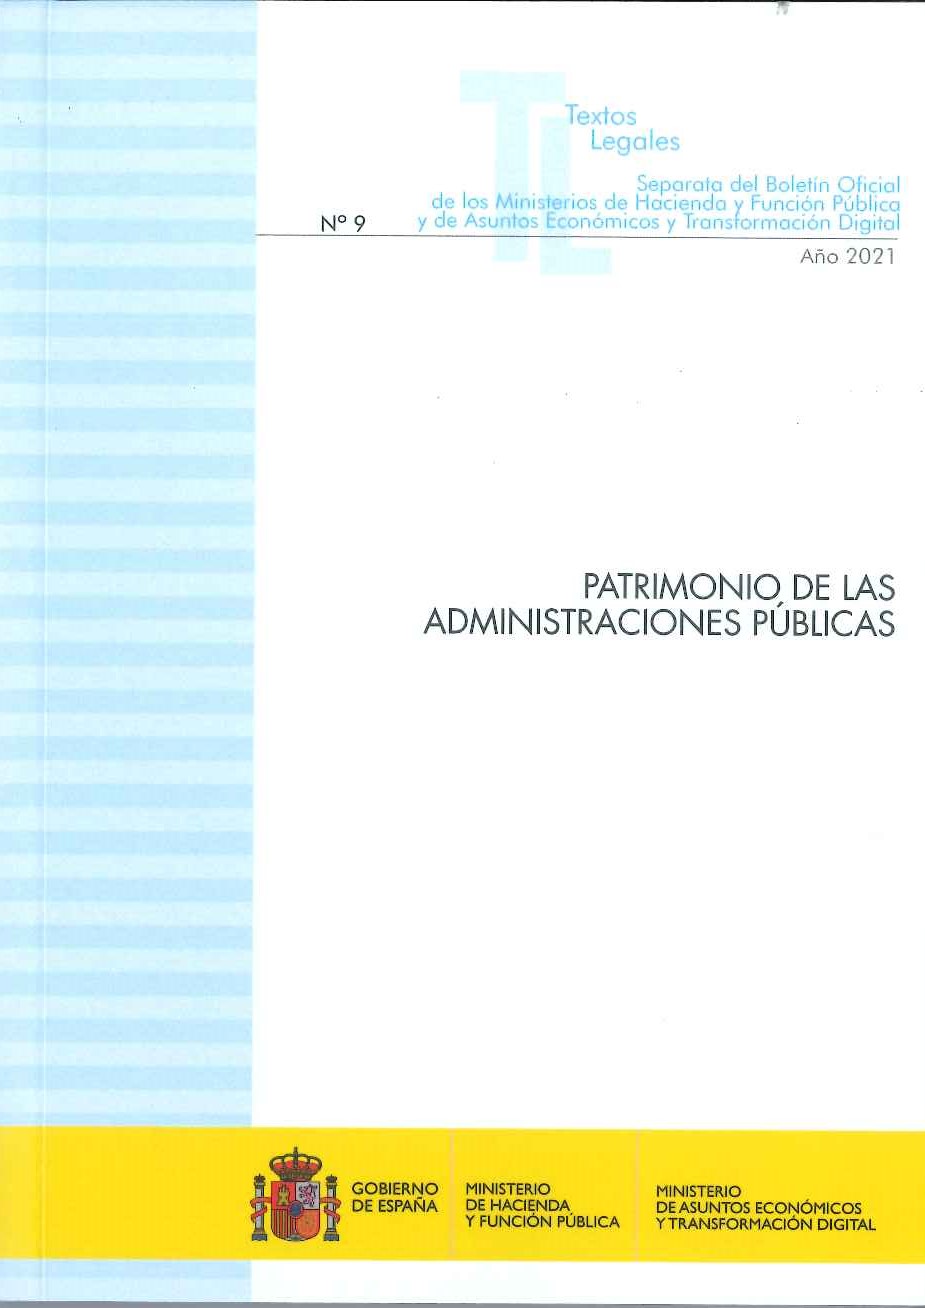 PATRIMONIO DE LAS ADMINISTRACIONES PÚBLICAS